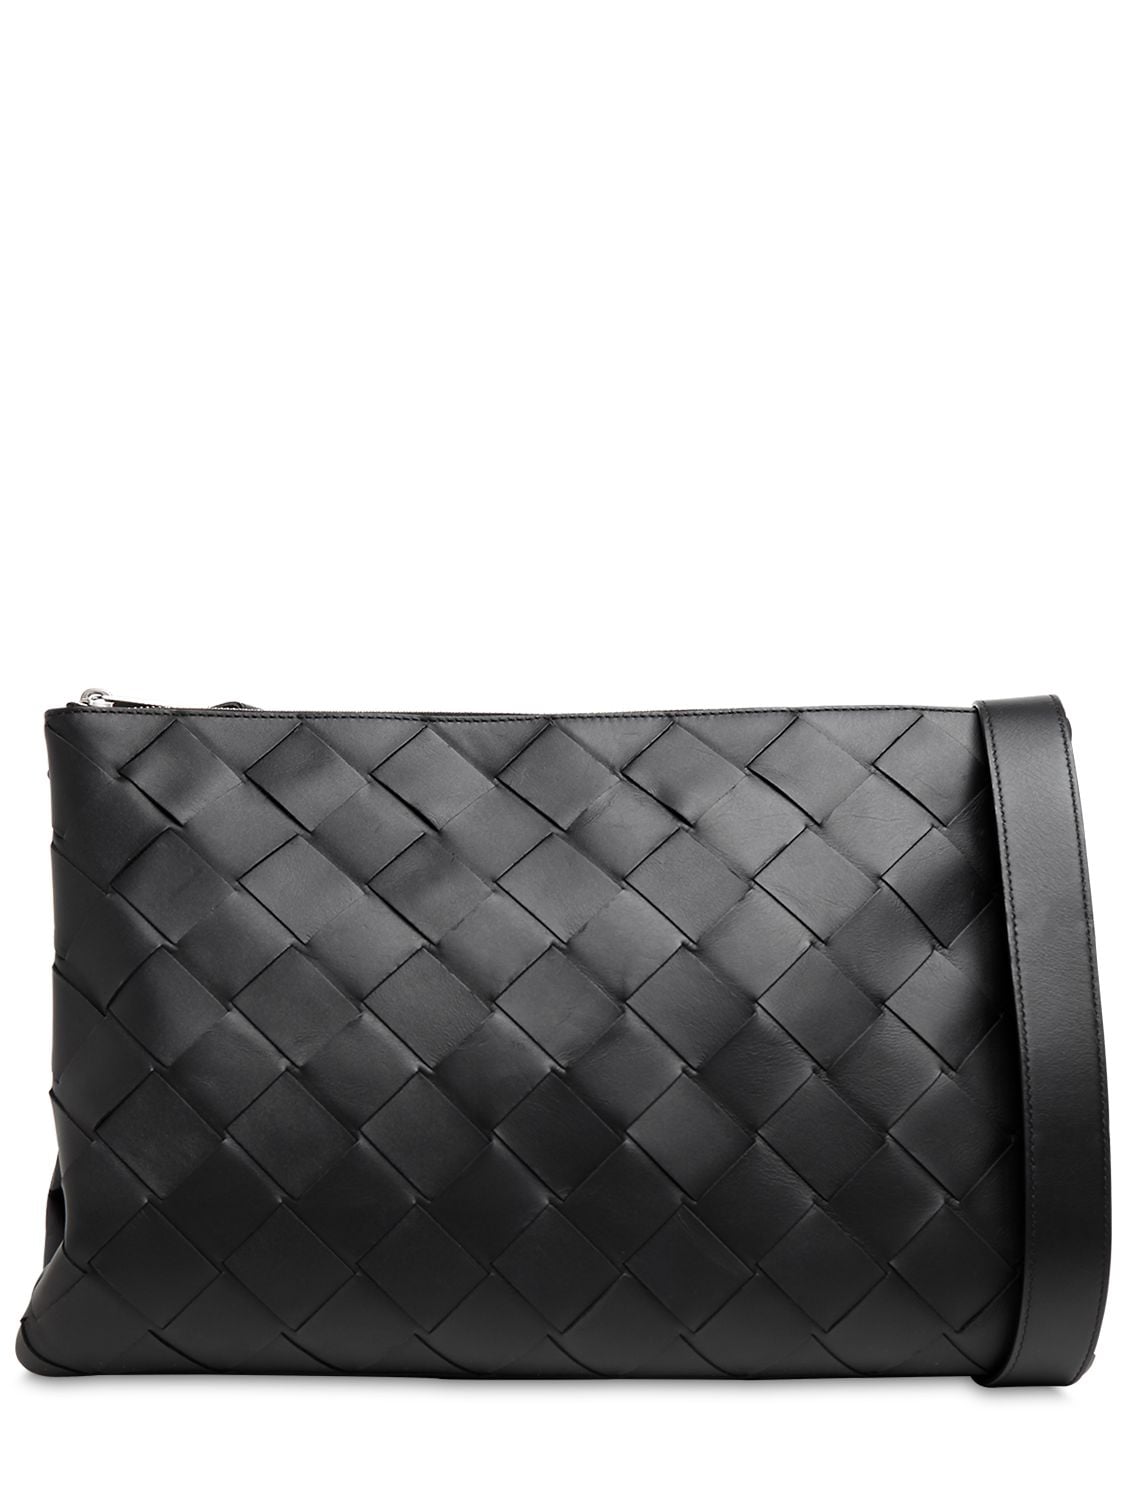 Bottega Veneta Medium Maxi Intreccio Crossbody Bag In Black